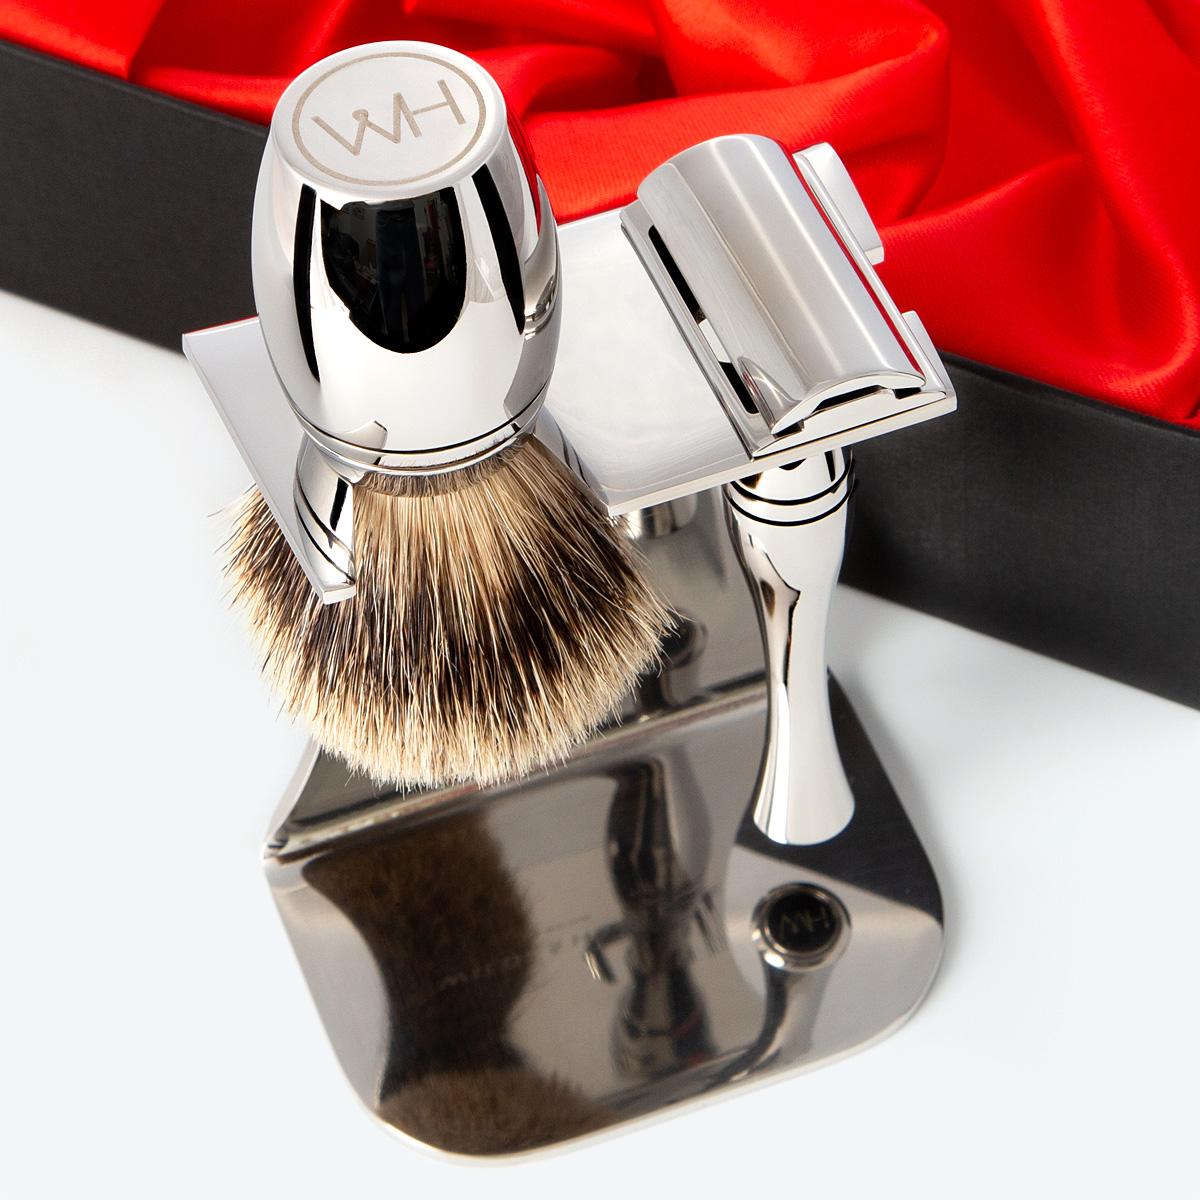 stainless steel contemporary design razor and badger hair shaving gift set